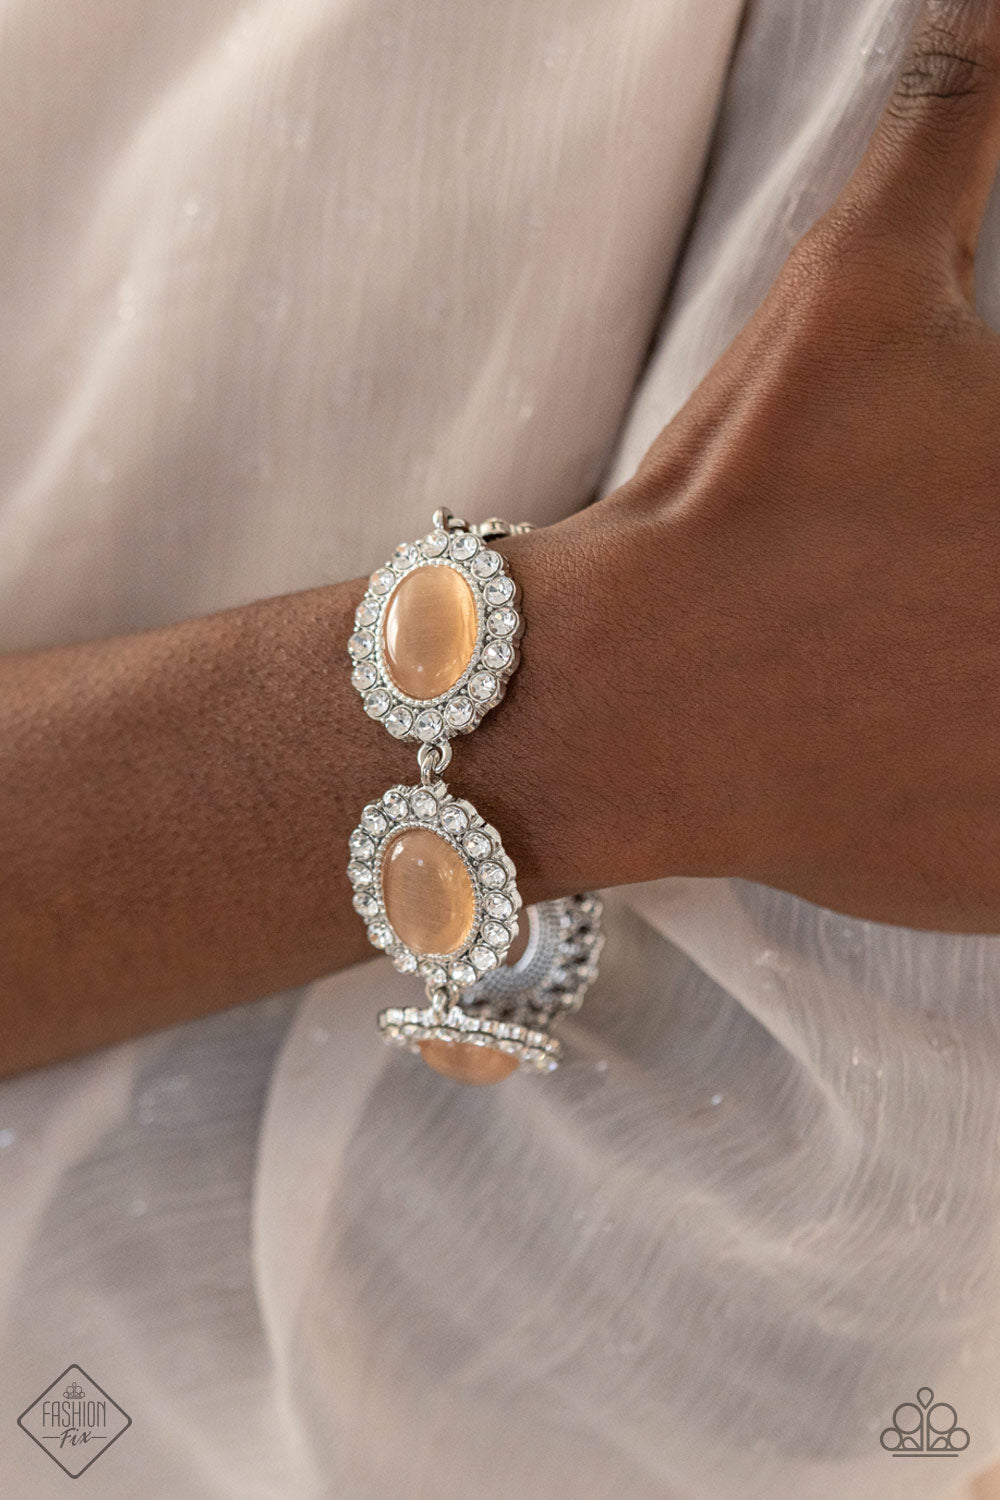 Paparazzi Demurely Diva Orange Clasp Bracelet - Fashion Fix Glimpses of Malibu February 2021